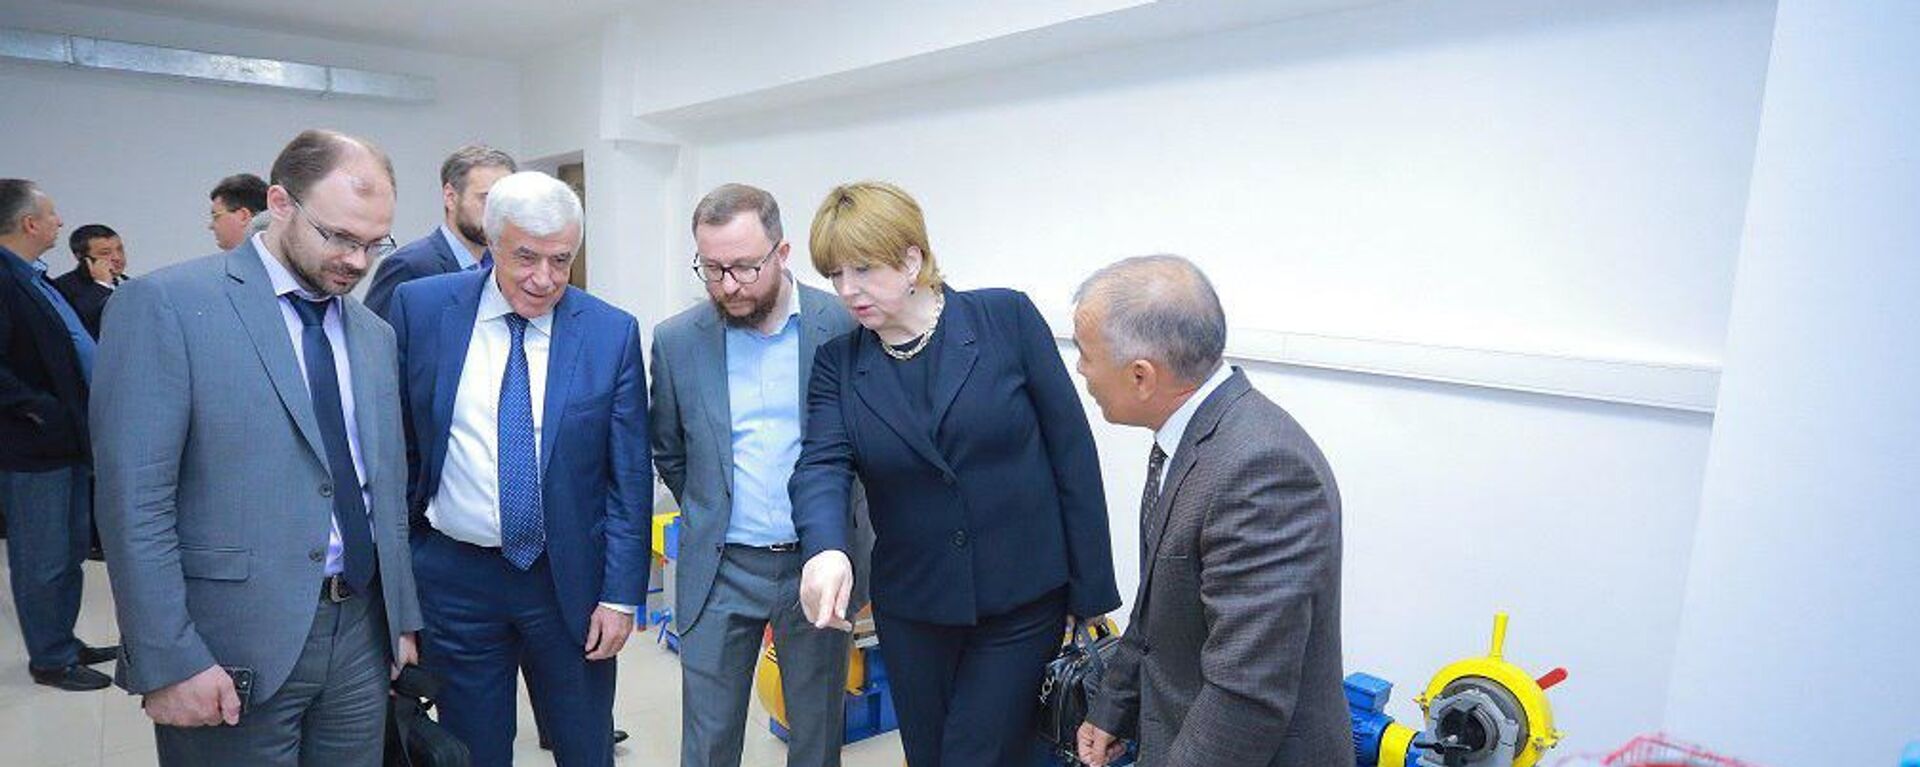 Российская делегация посетила филиал НИТУ МИСиС в Алмалыке - Sputnik Узбекистан, 1920, 09.09.2019